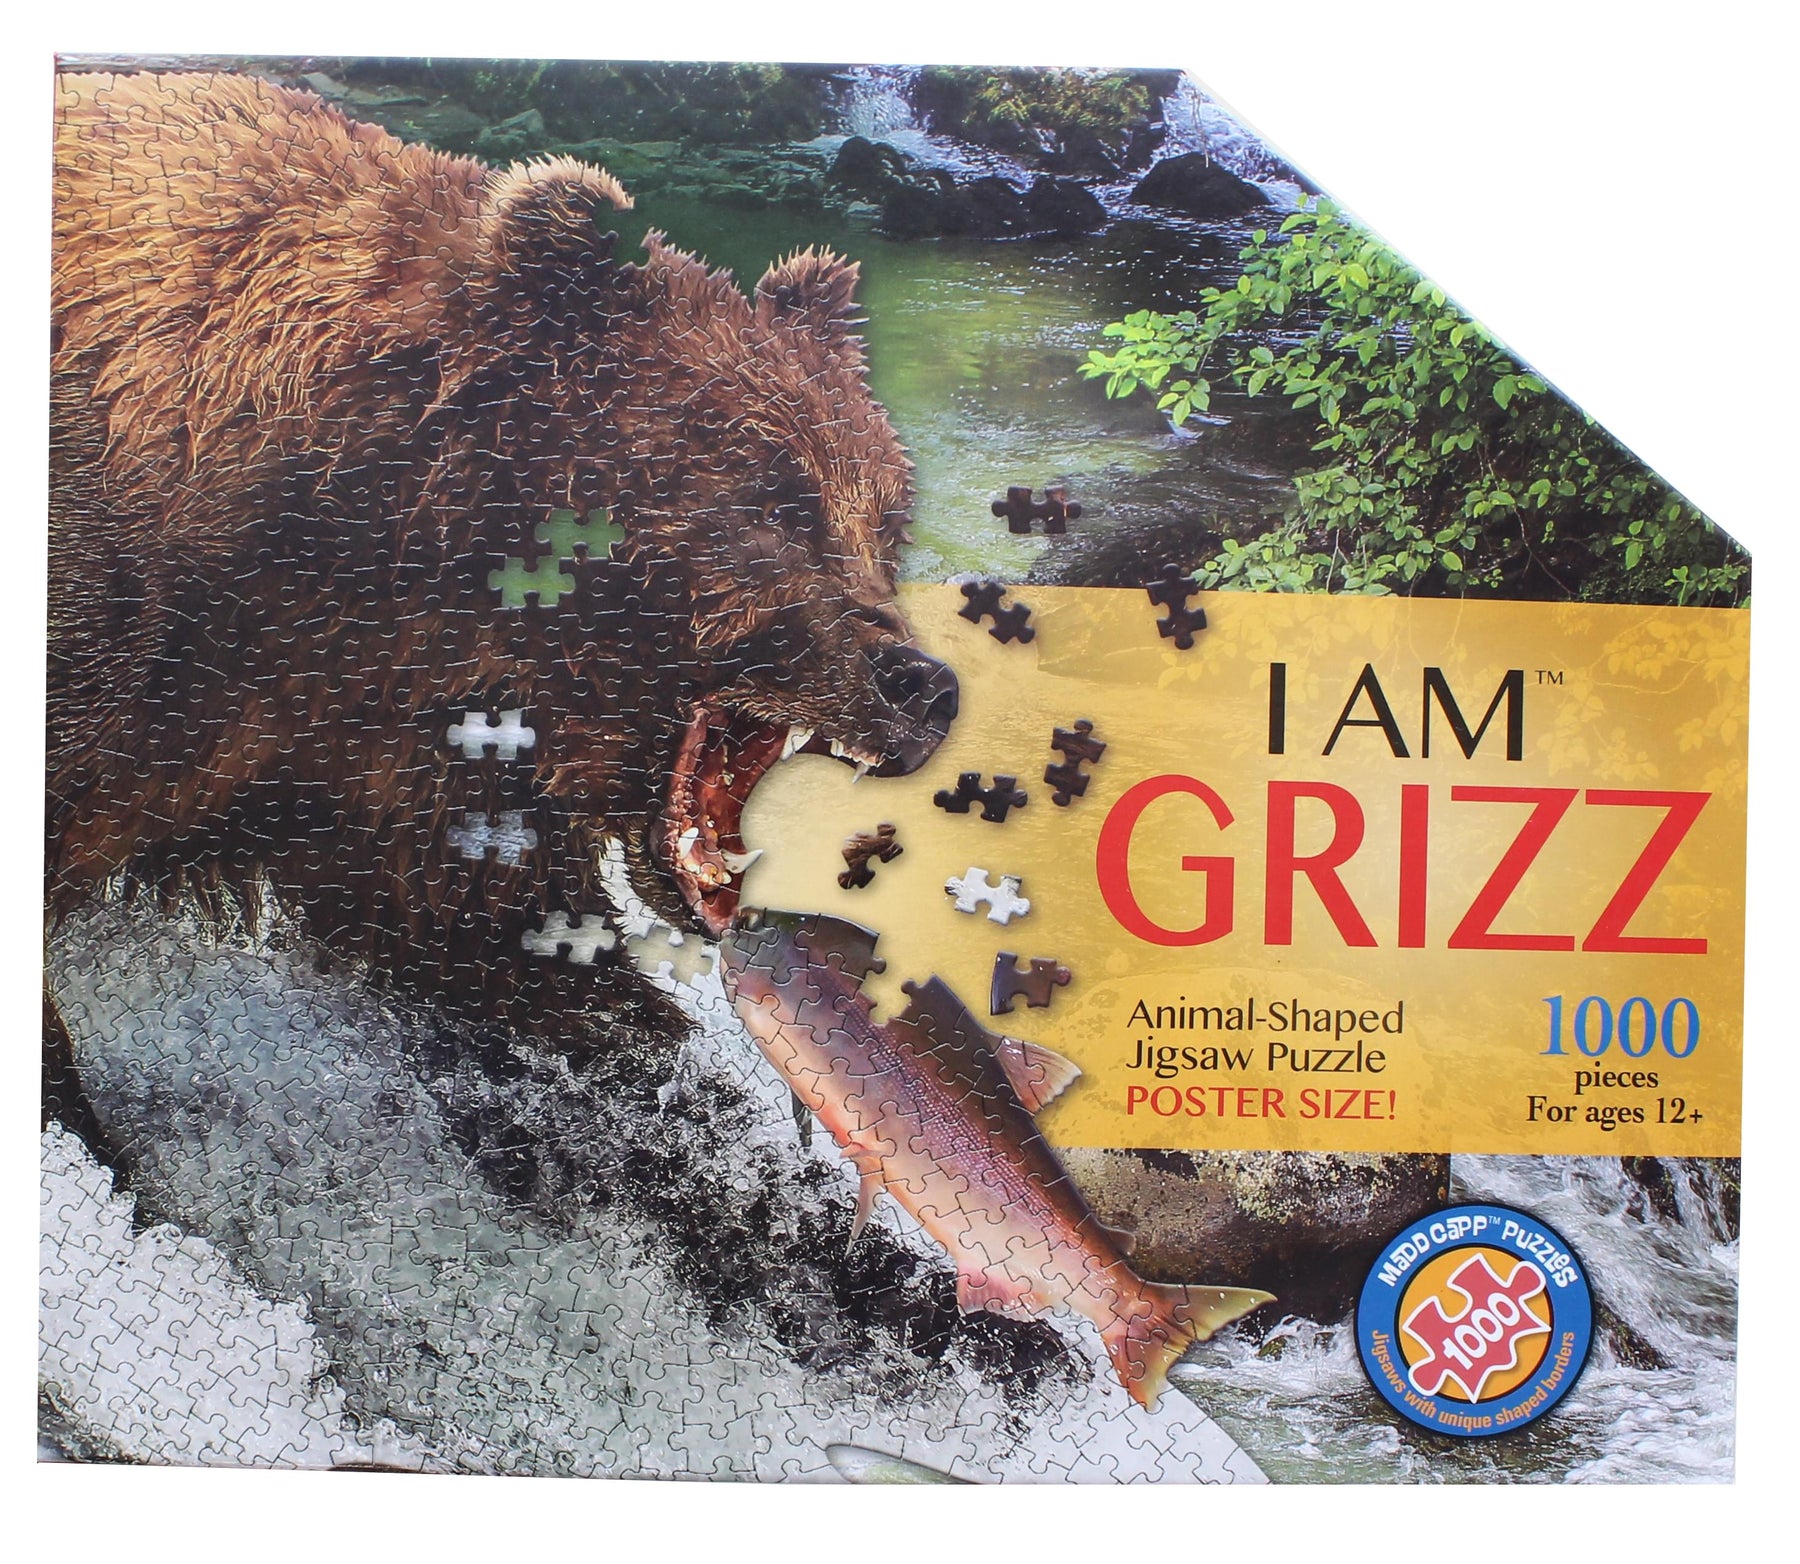 I AM Grizz 1000 Piece Animal-Shaped Jigsaw Puzzle